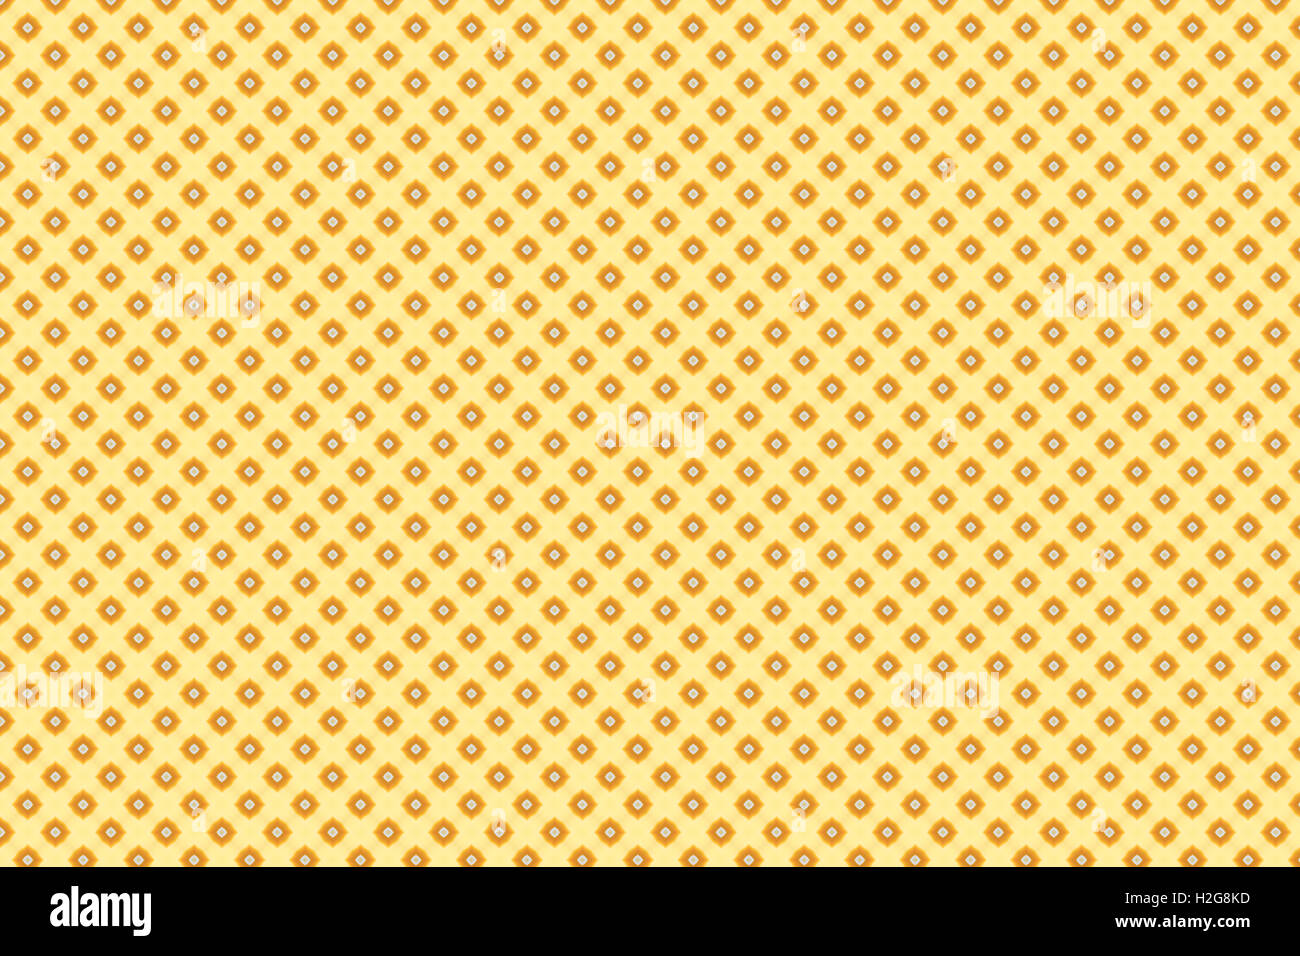 yellow wallpaper pattern background Stock Photo